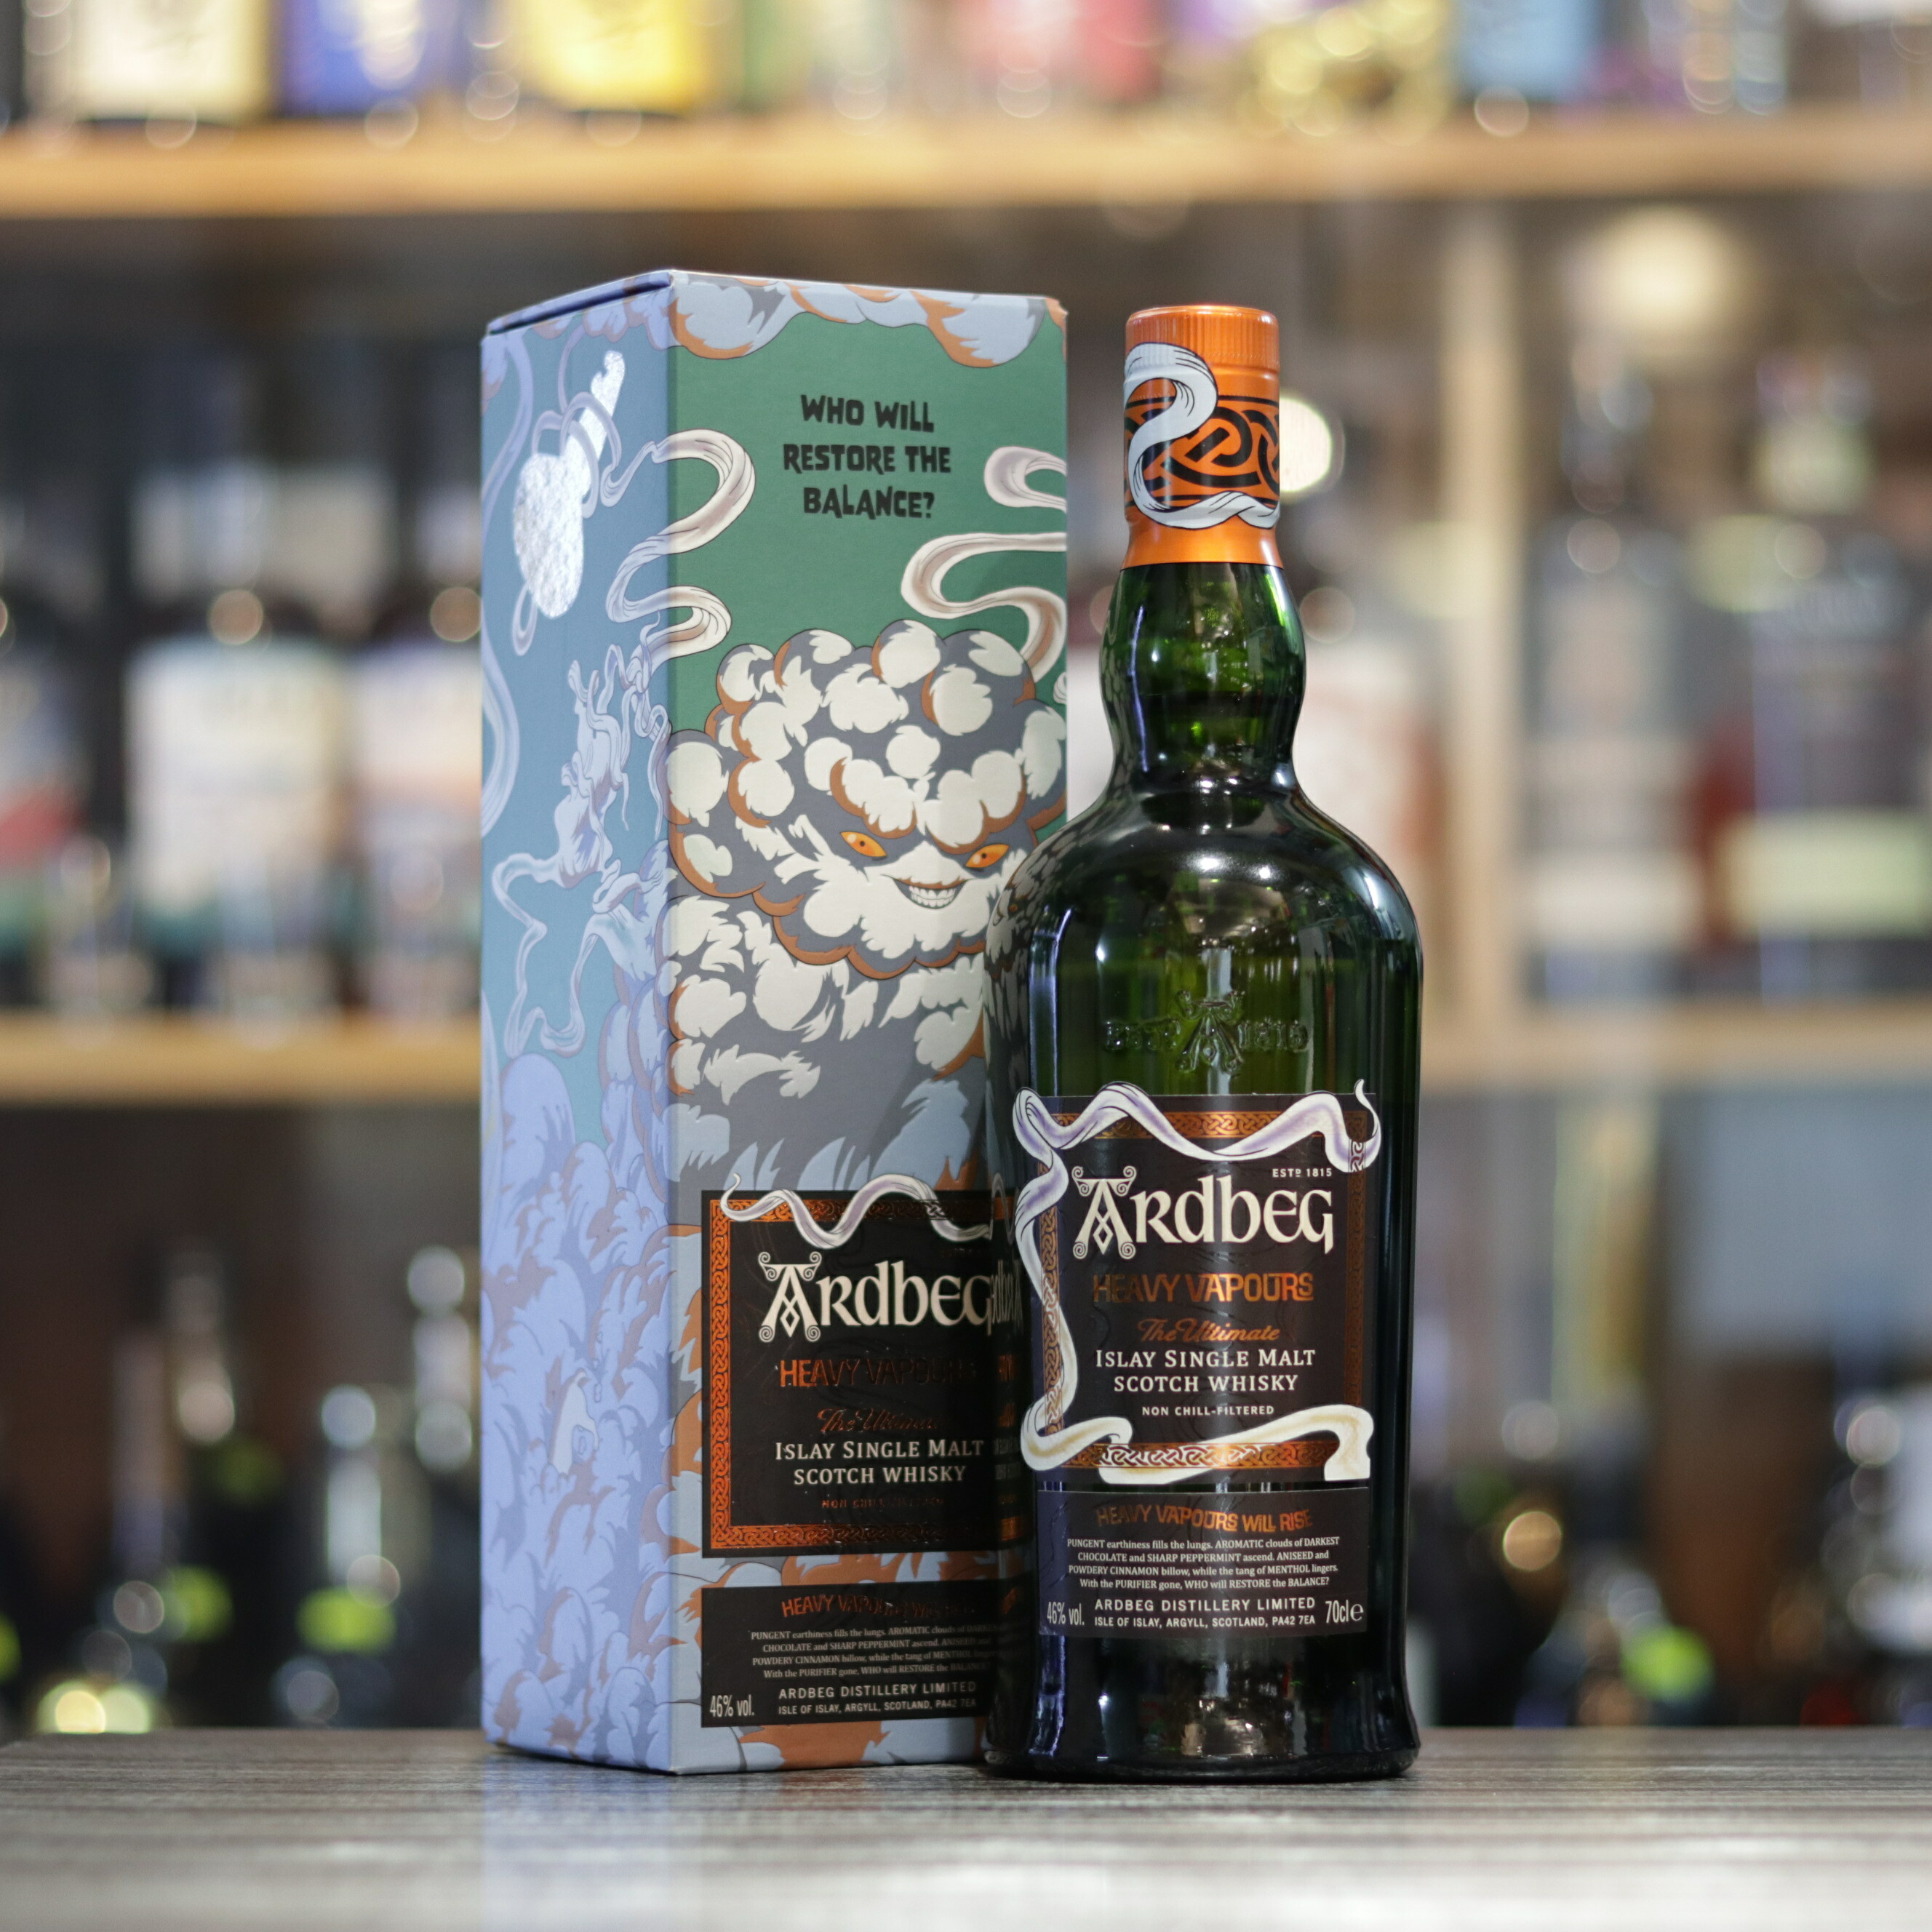 Ardbeg Heavy Vapours Main Release 2023 Single Malt Whisky 46° 70cl